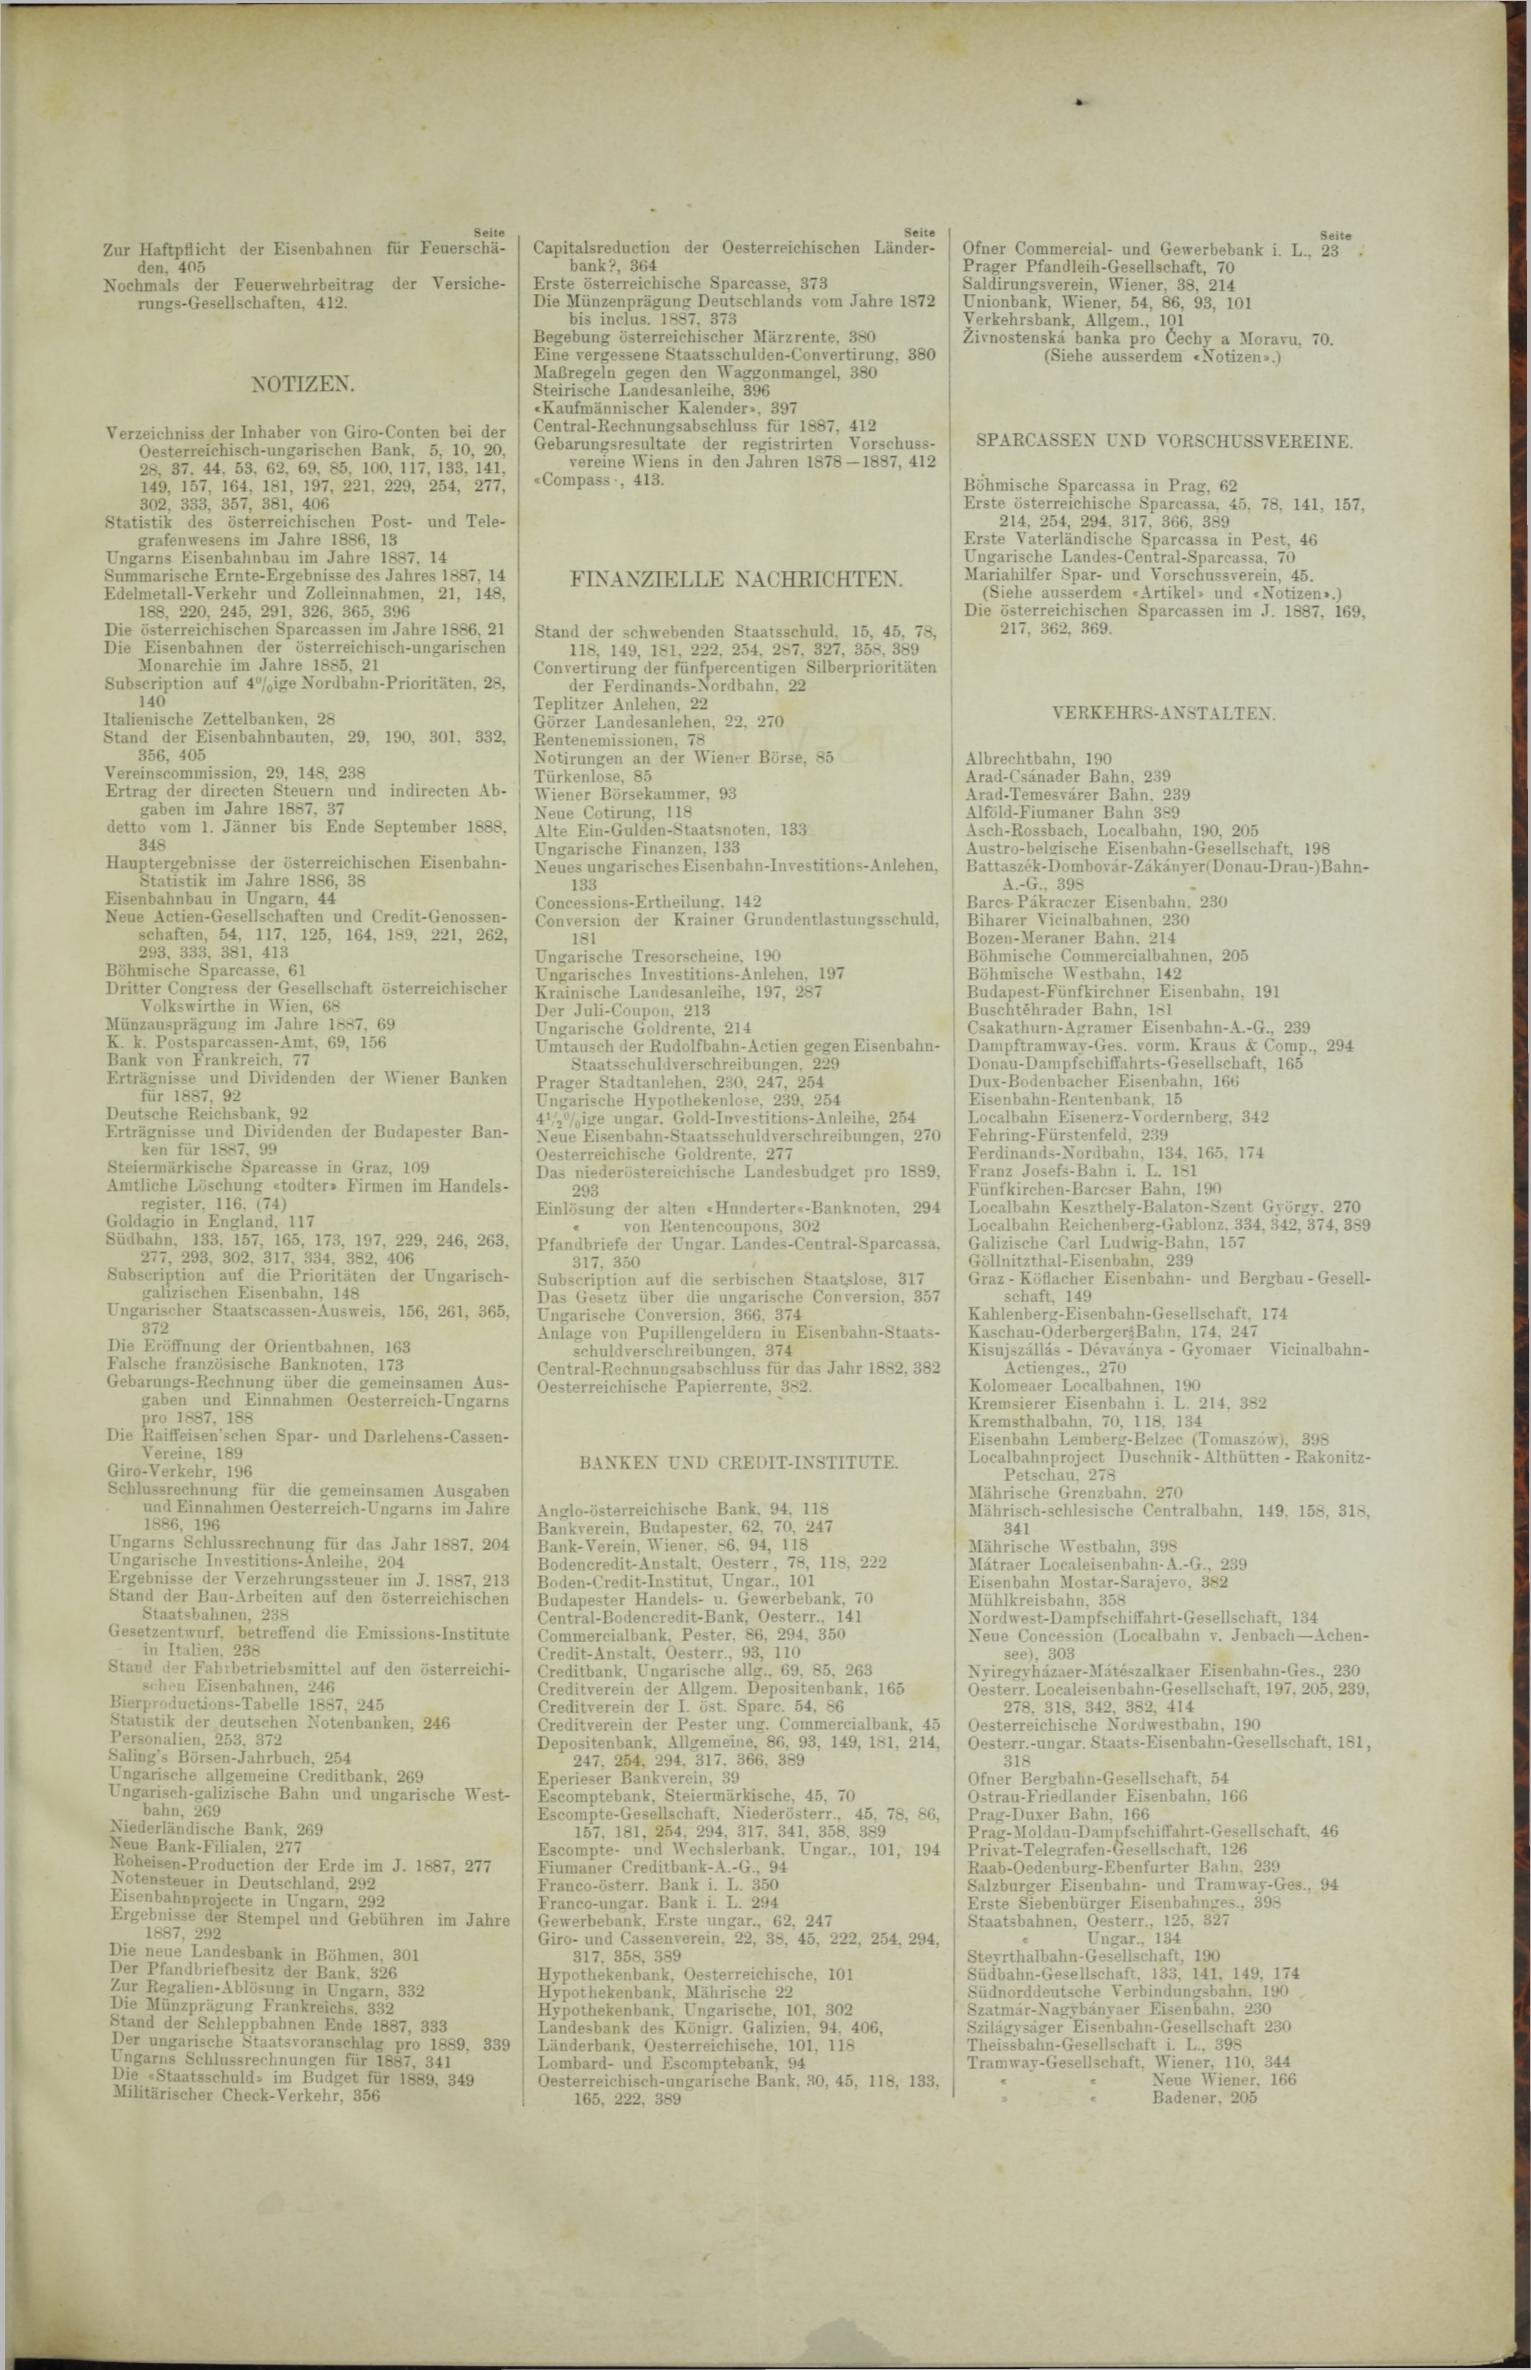 Der Tresor 19.07.1888 - Seite 11